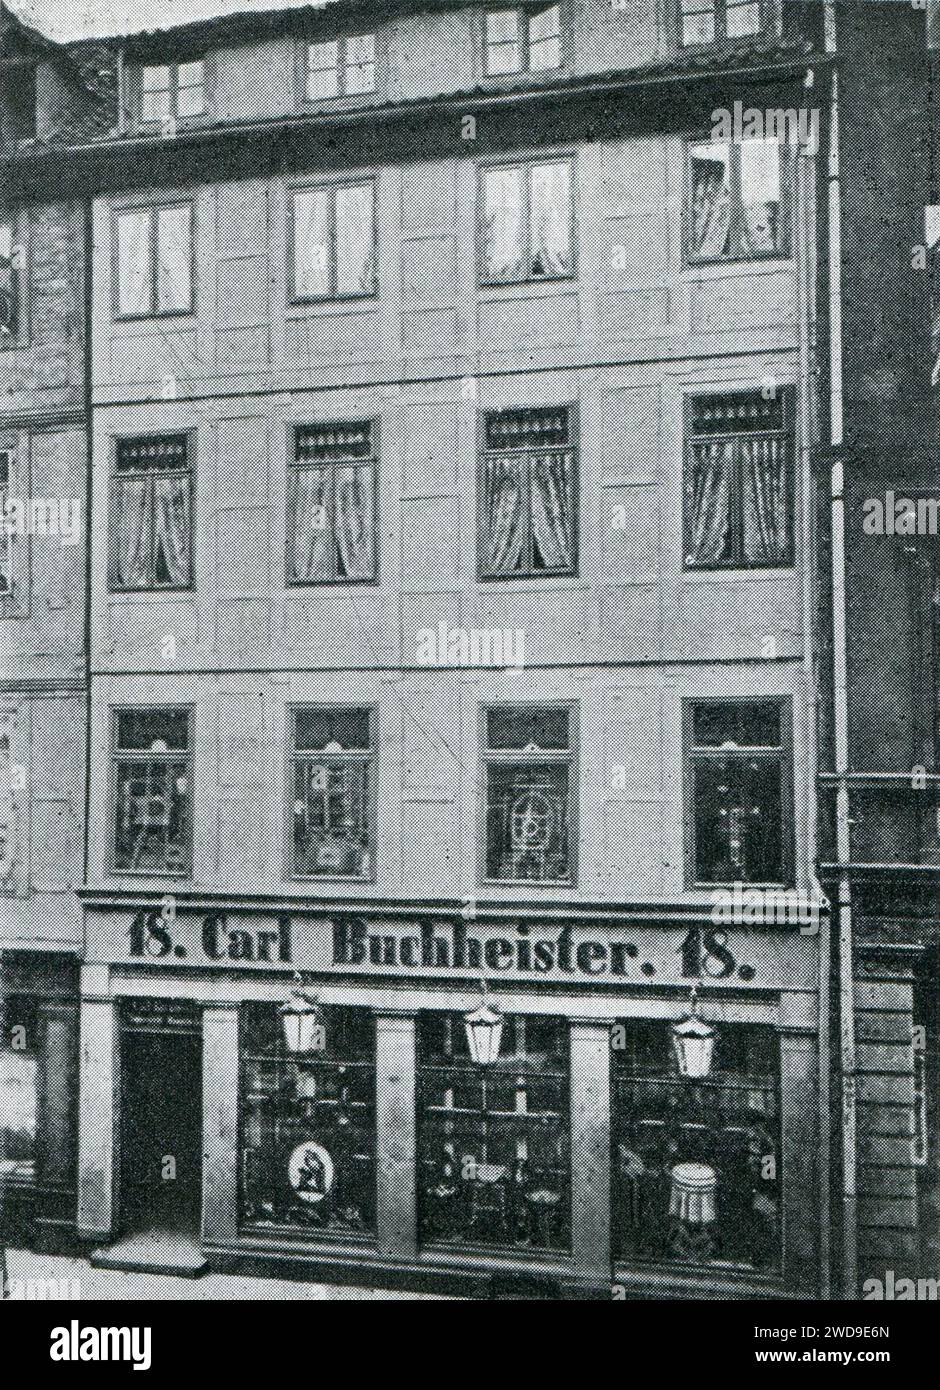 1890er Jahre circa Carl Buchheister, Tapisserie-Manufactur, Knochenhauerstraße 18. Stock Photo